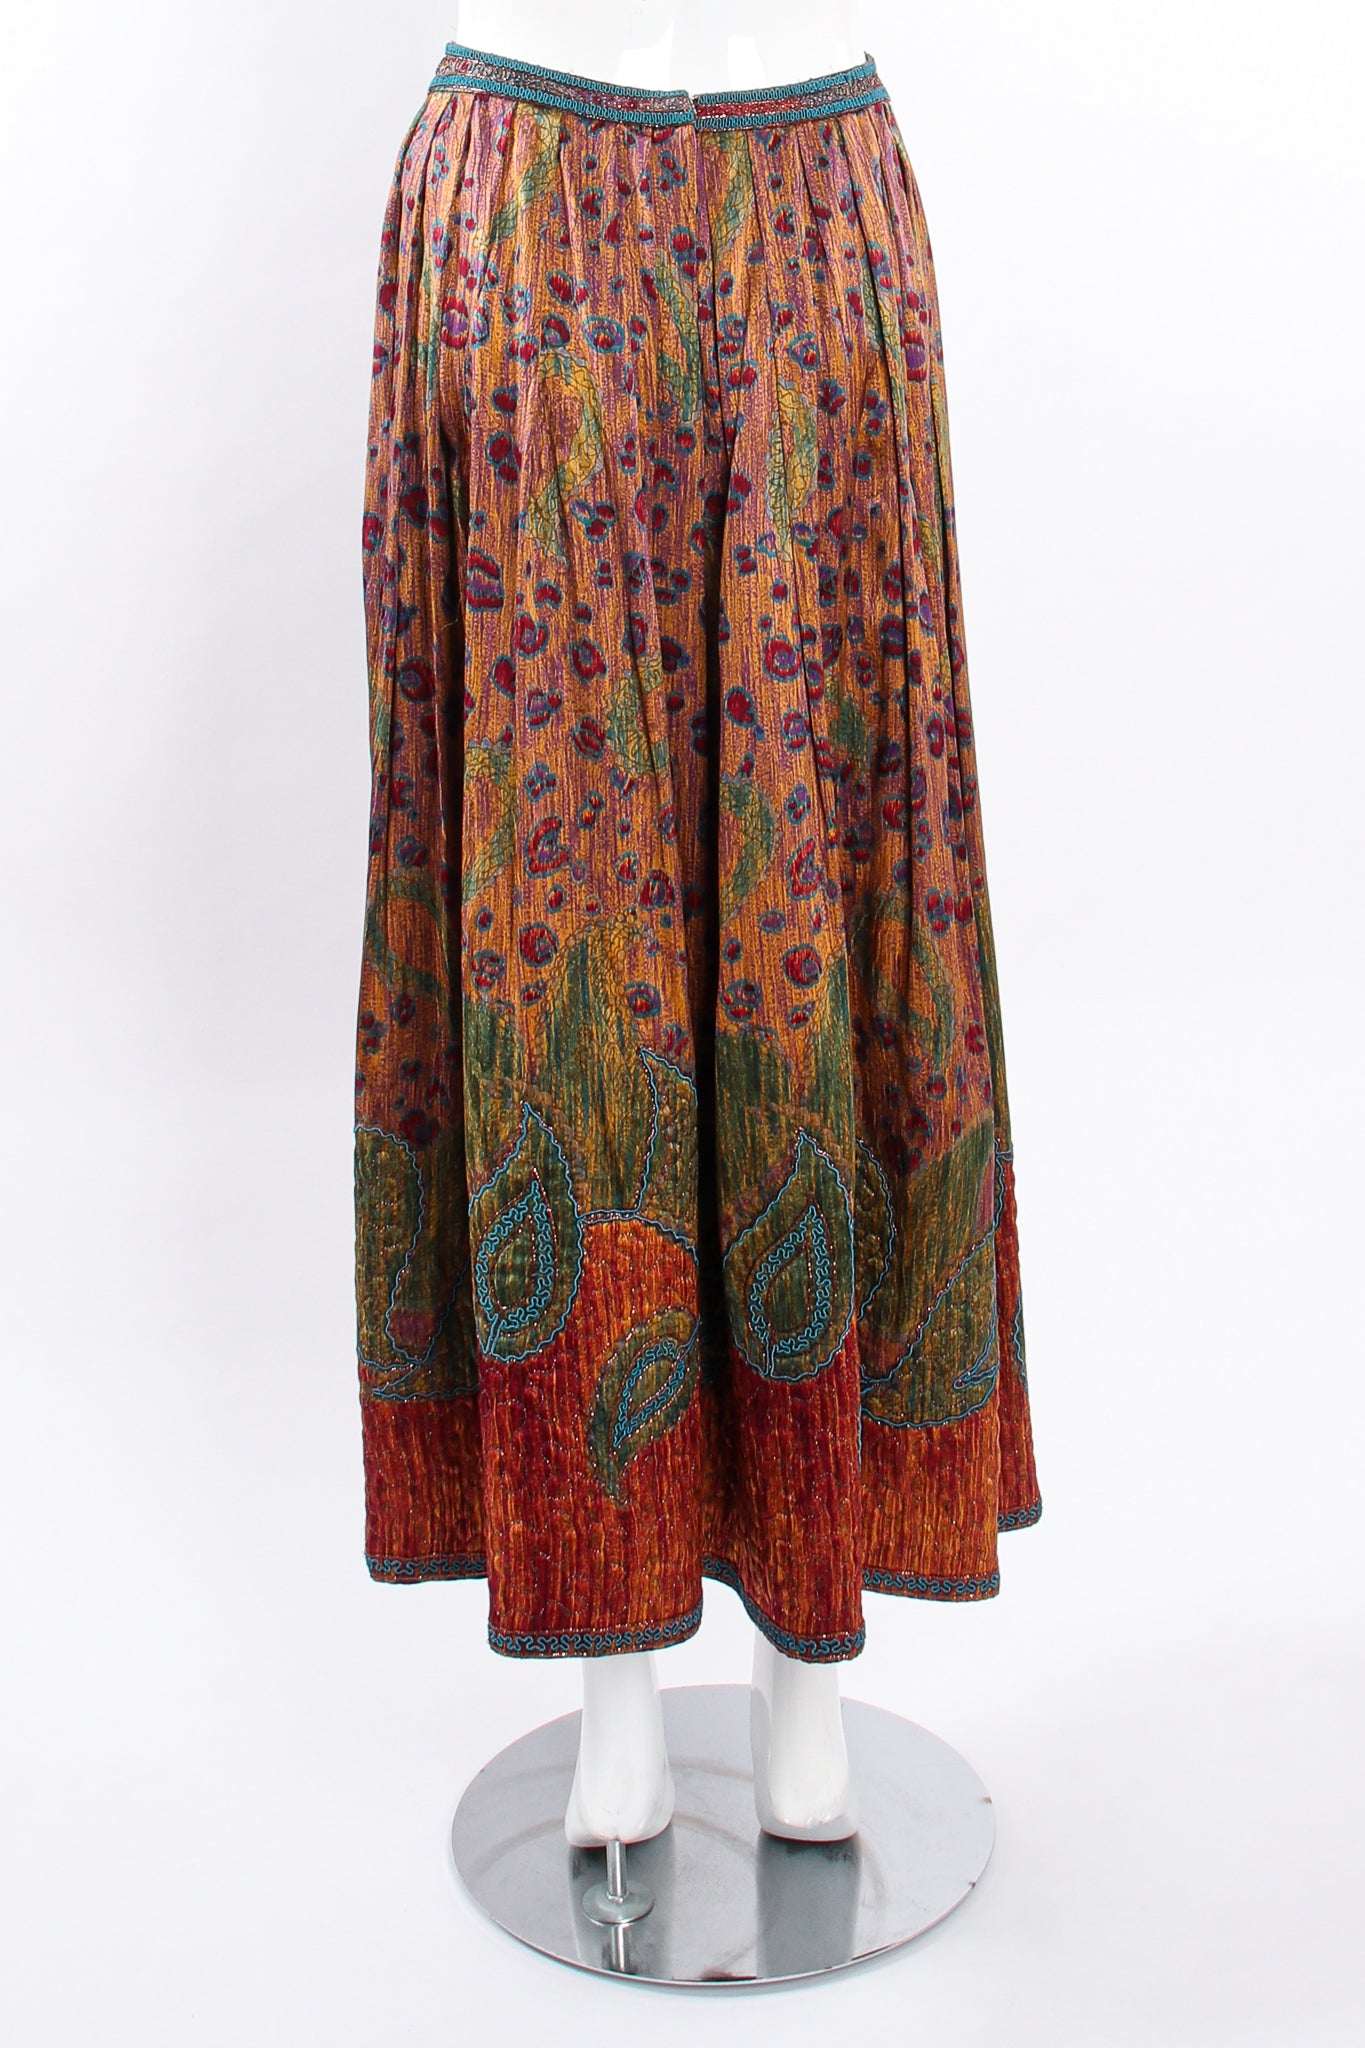 Vintage Oscar de la Renta Embroidered Blouse & Skirt Set on Mannequin skirt back at Recess LA